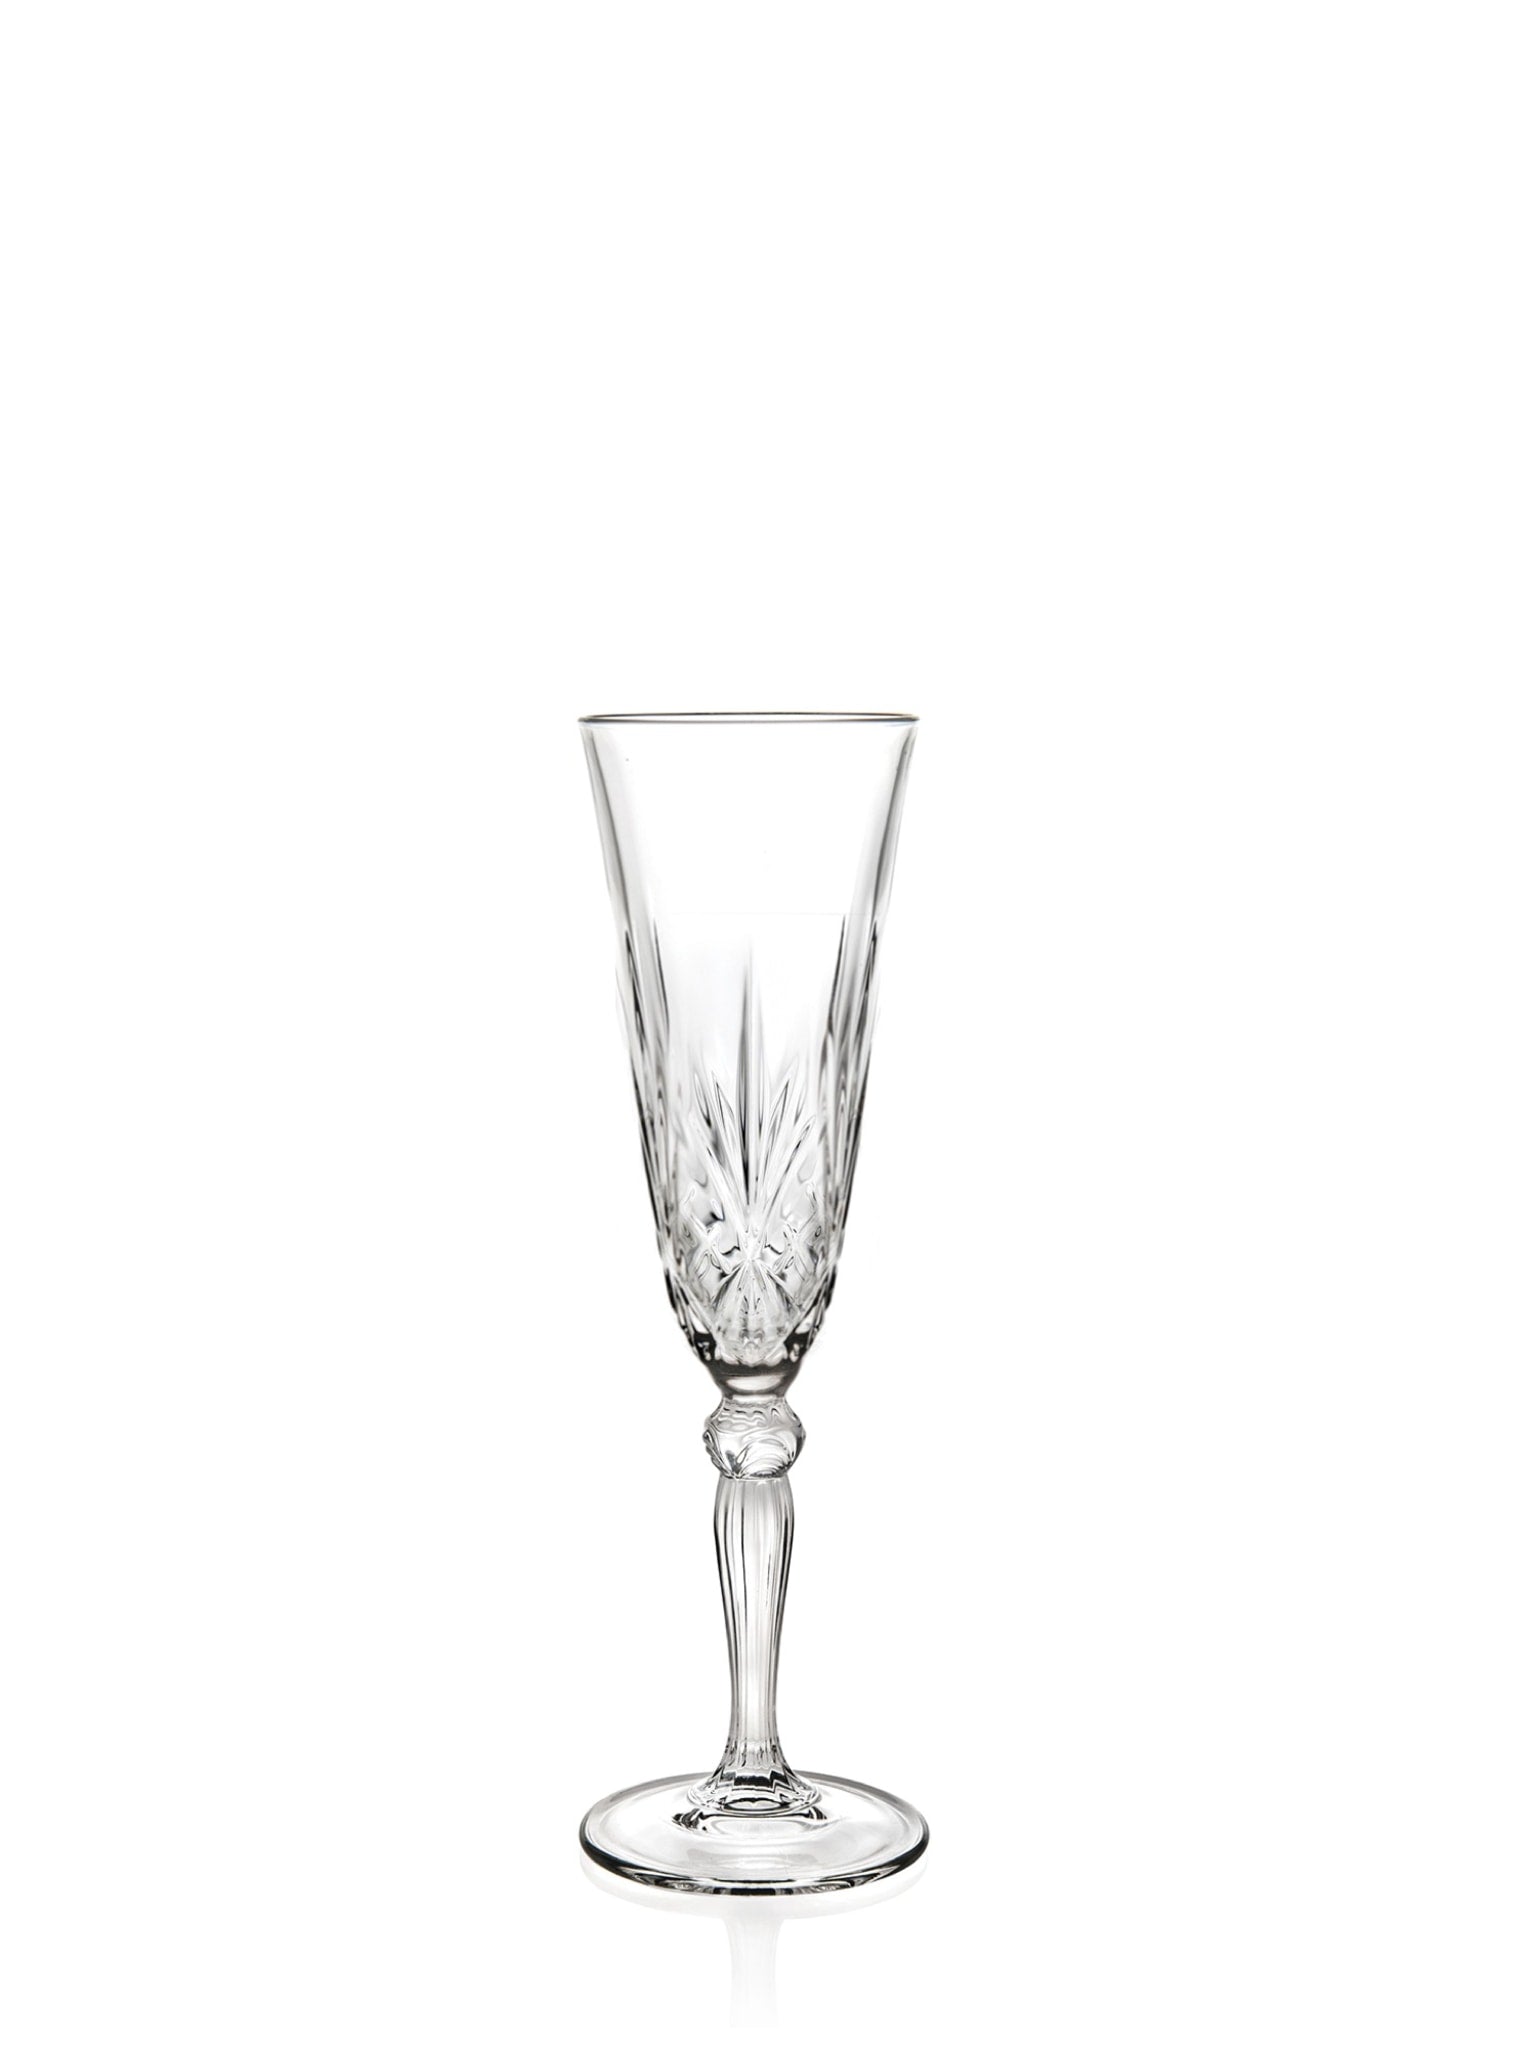 Her er fem alternativer til alt-tekstbeskrivelser på dansk, tysk og engelsk:  Dansk:  RCR Melodia Champagneglas (16 cl) - et elegant og stilfuldt champagneglas til festlige anledninger.